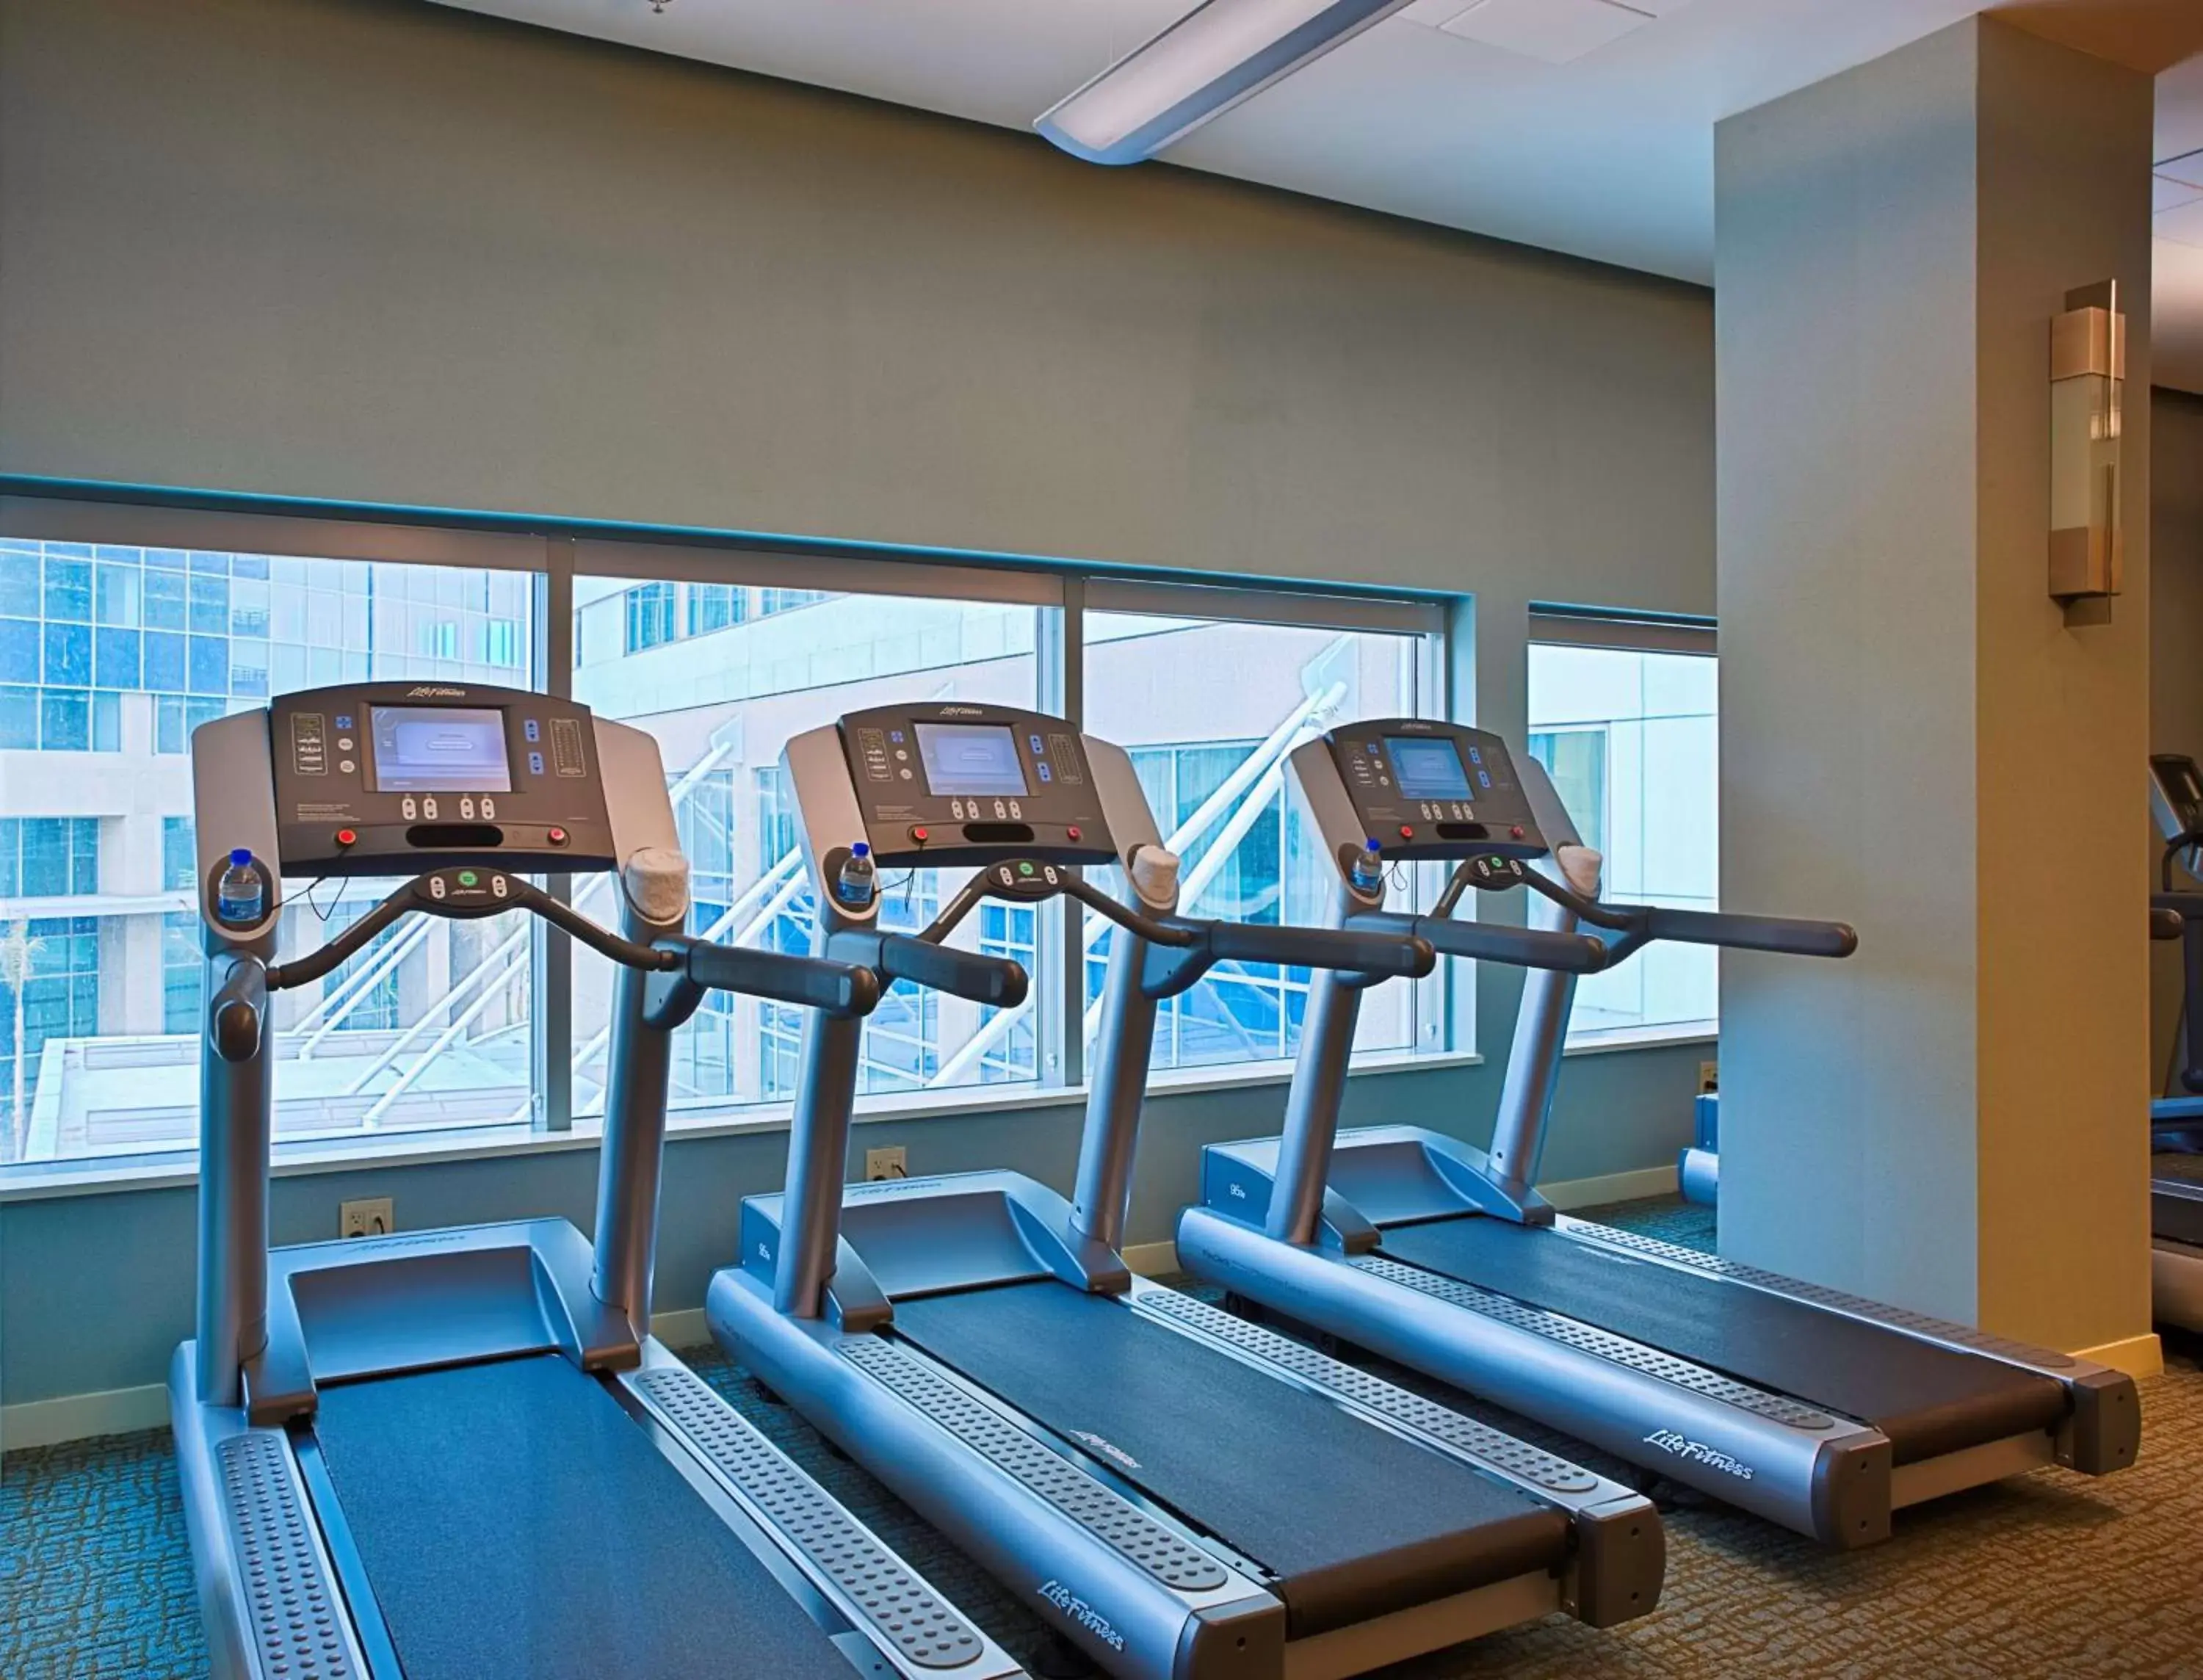 Fitness centre/facilities, Fitness Center/Facilities in Hyatt Regency Trinidad